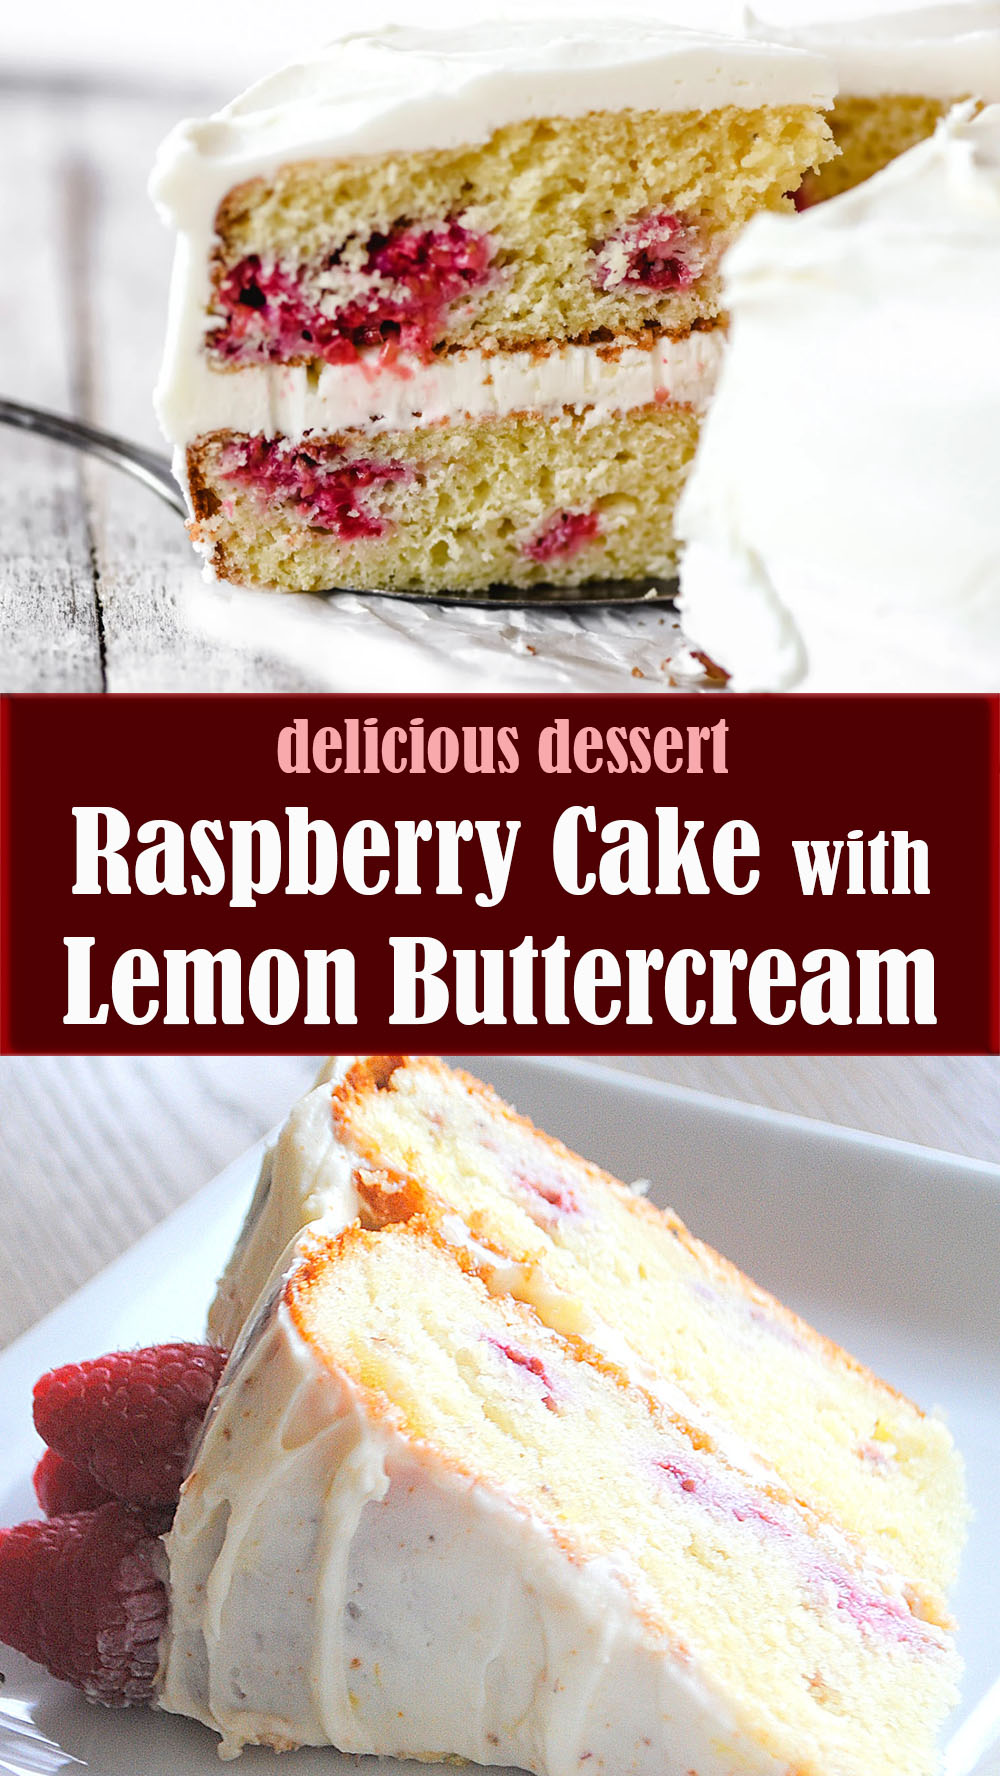 Raspberry Cake with Lemon Buttercream